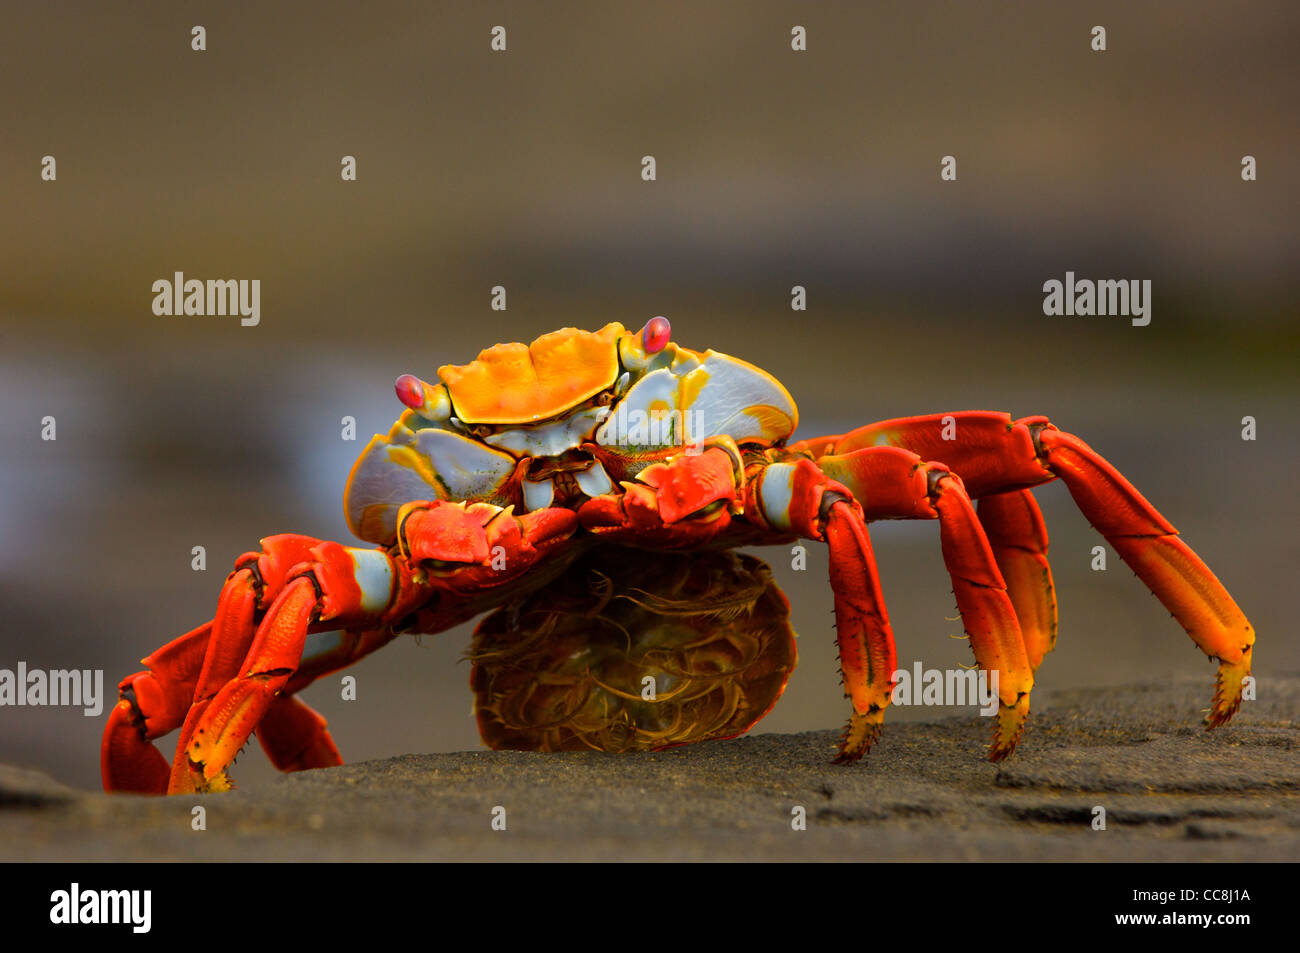 Un Sally Lightfoot crab (Grapsus grapsus) avec sa pochette d'ouvrir, après avoir donné naissance. L'île de Santa Cruz, Galapagos. Banque D'Images